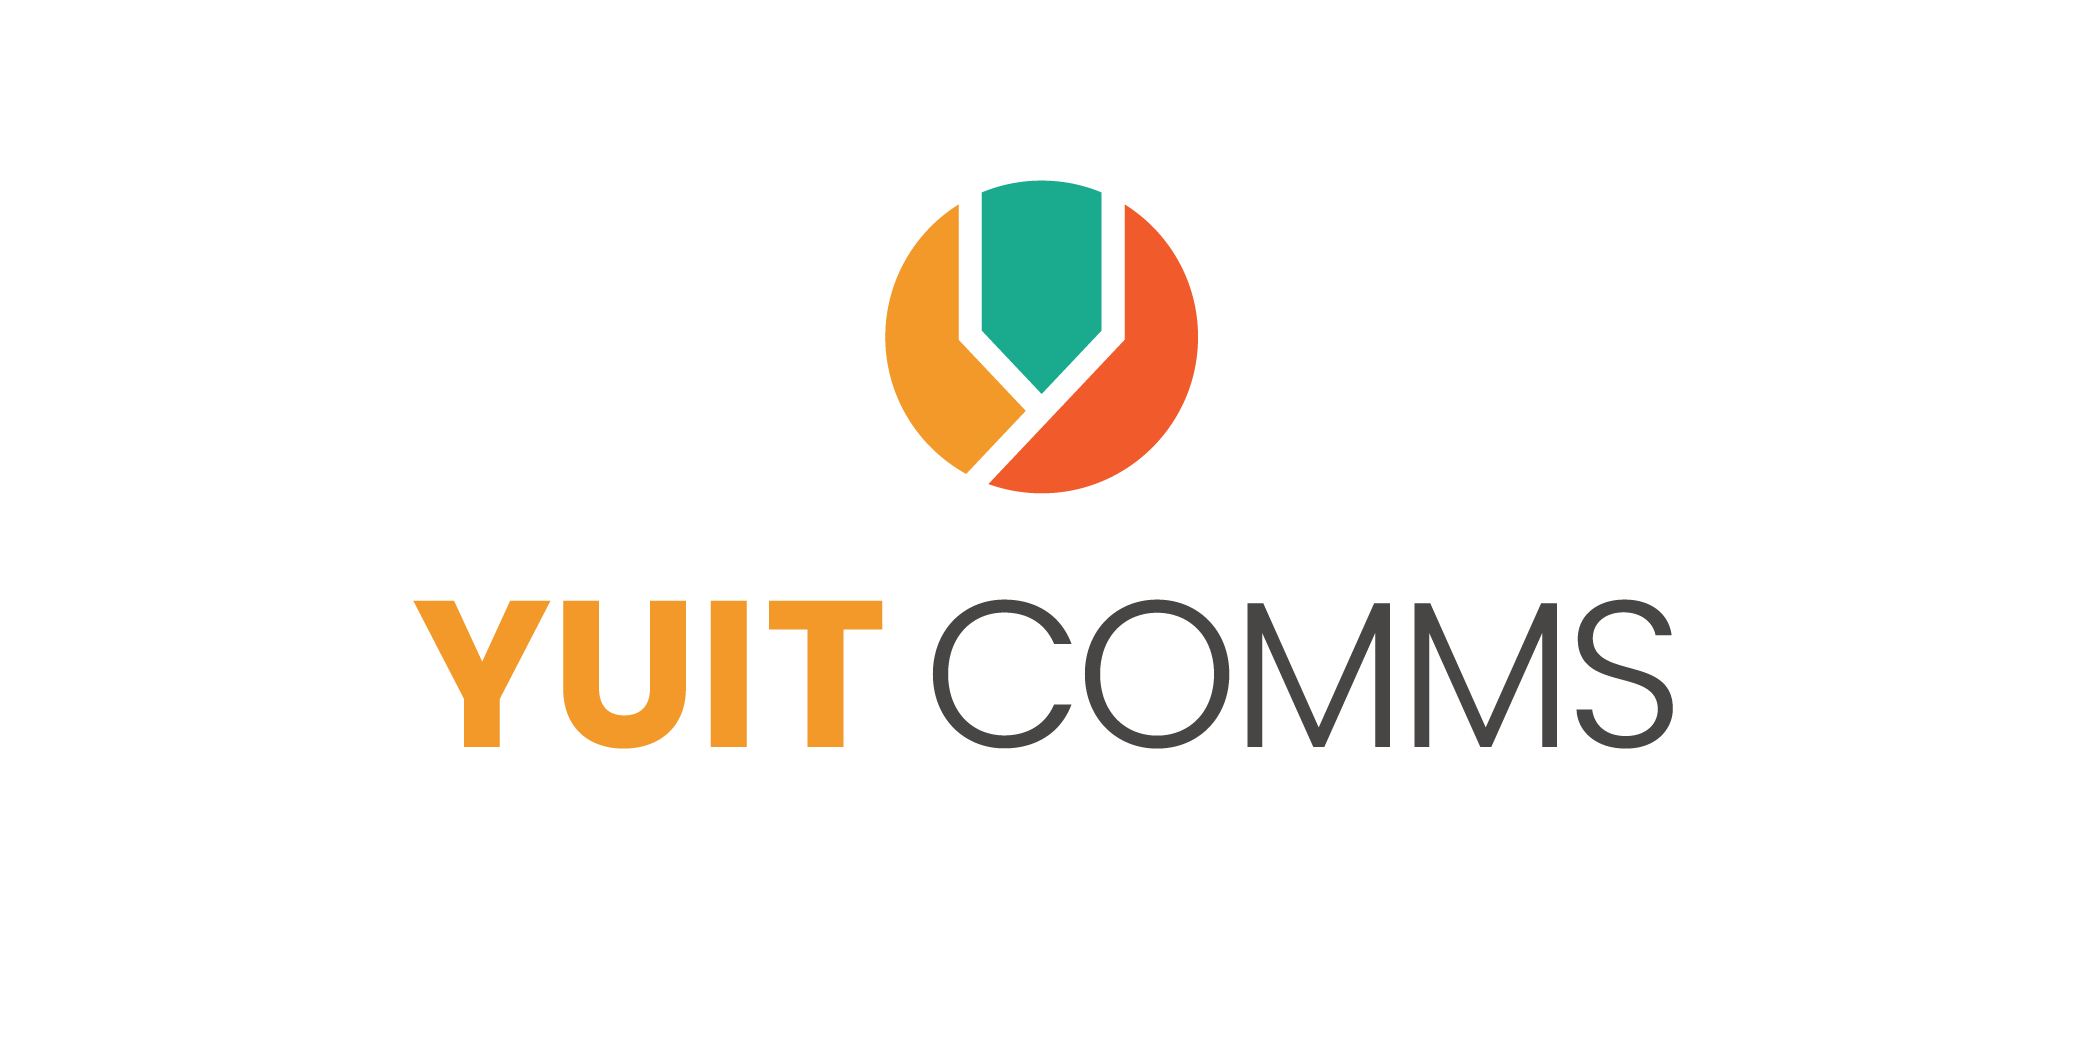 21-YUIT-049 Yuit Comms Logo - CMYK Vertical.png